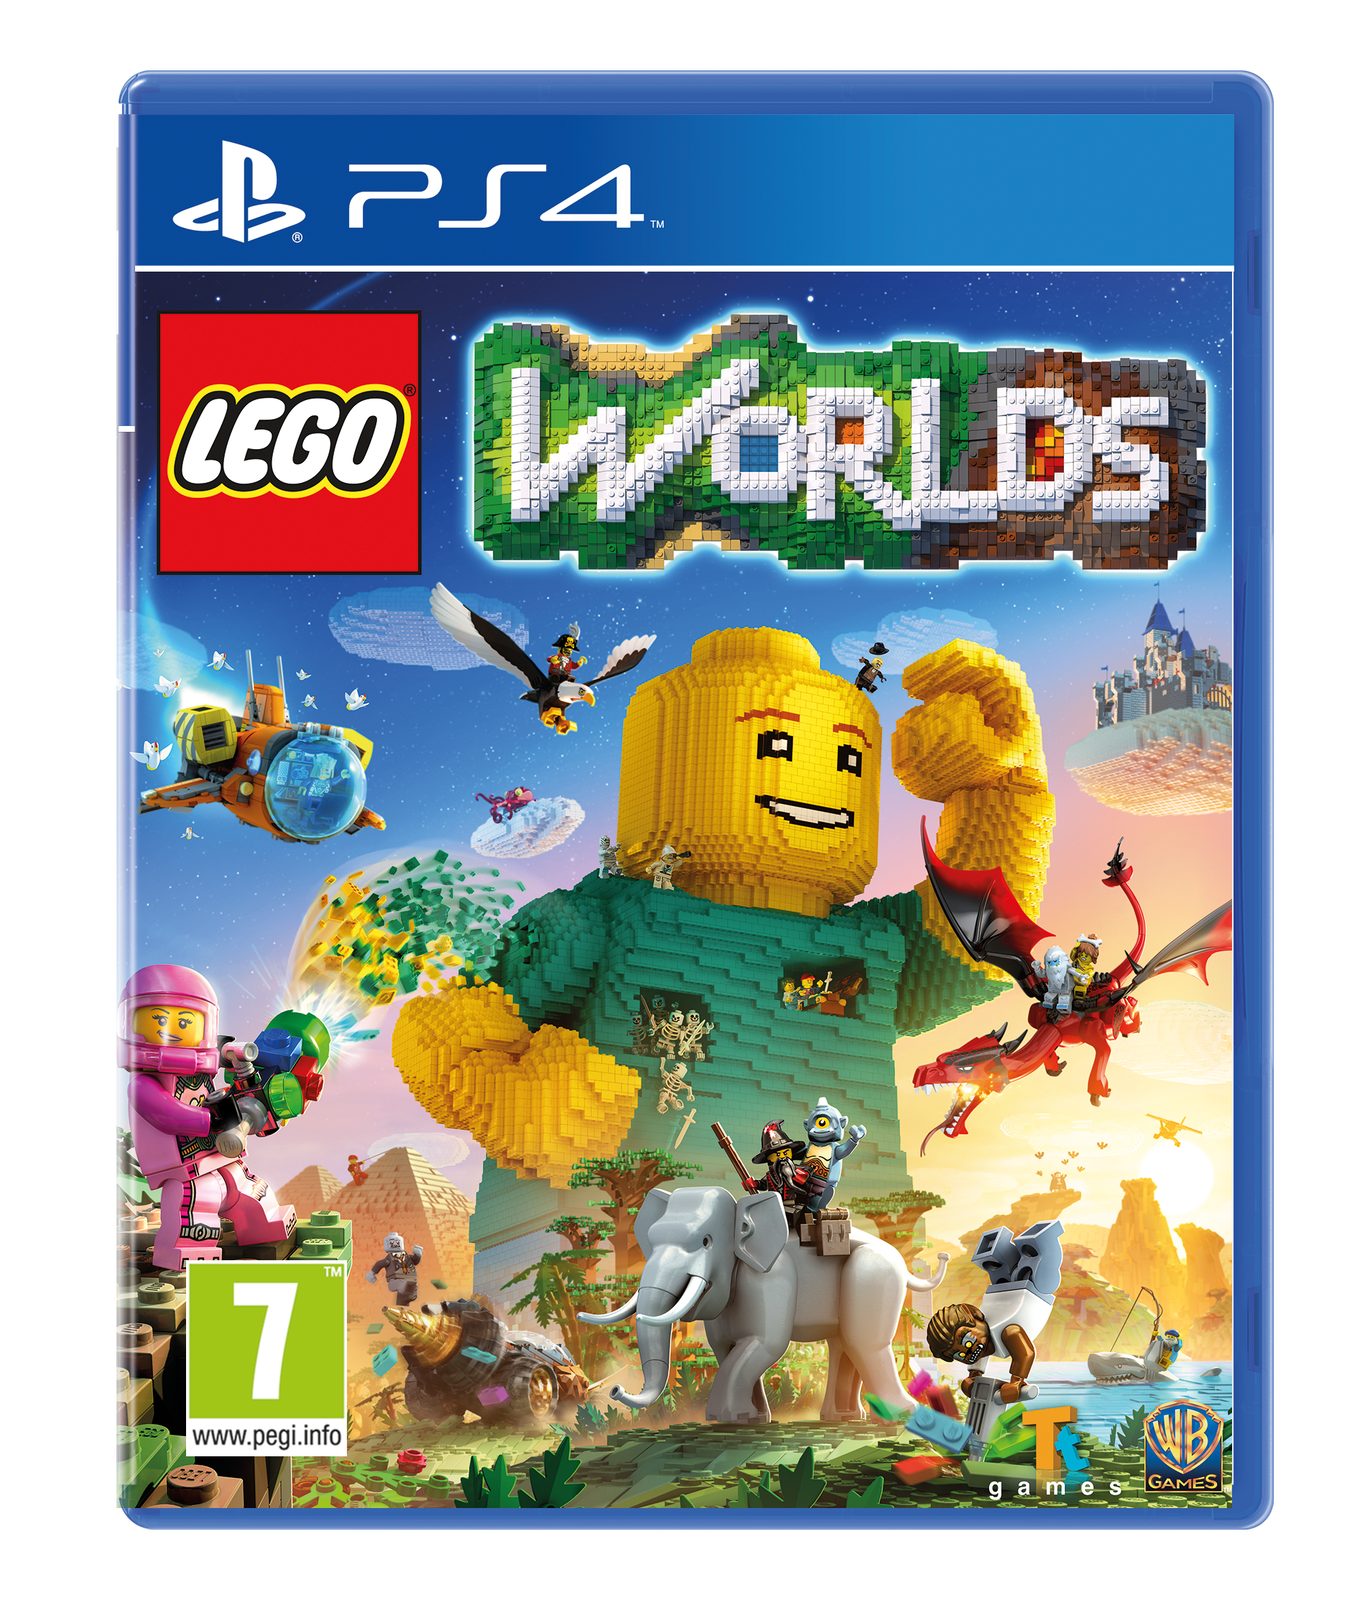 Lego Worlds Playstation 4 PS4 Spiel LEGO Worlds NEU PlayStation 4